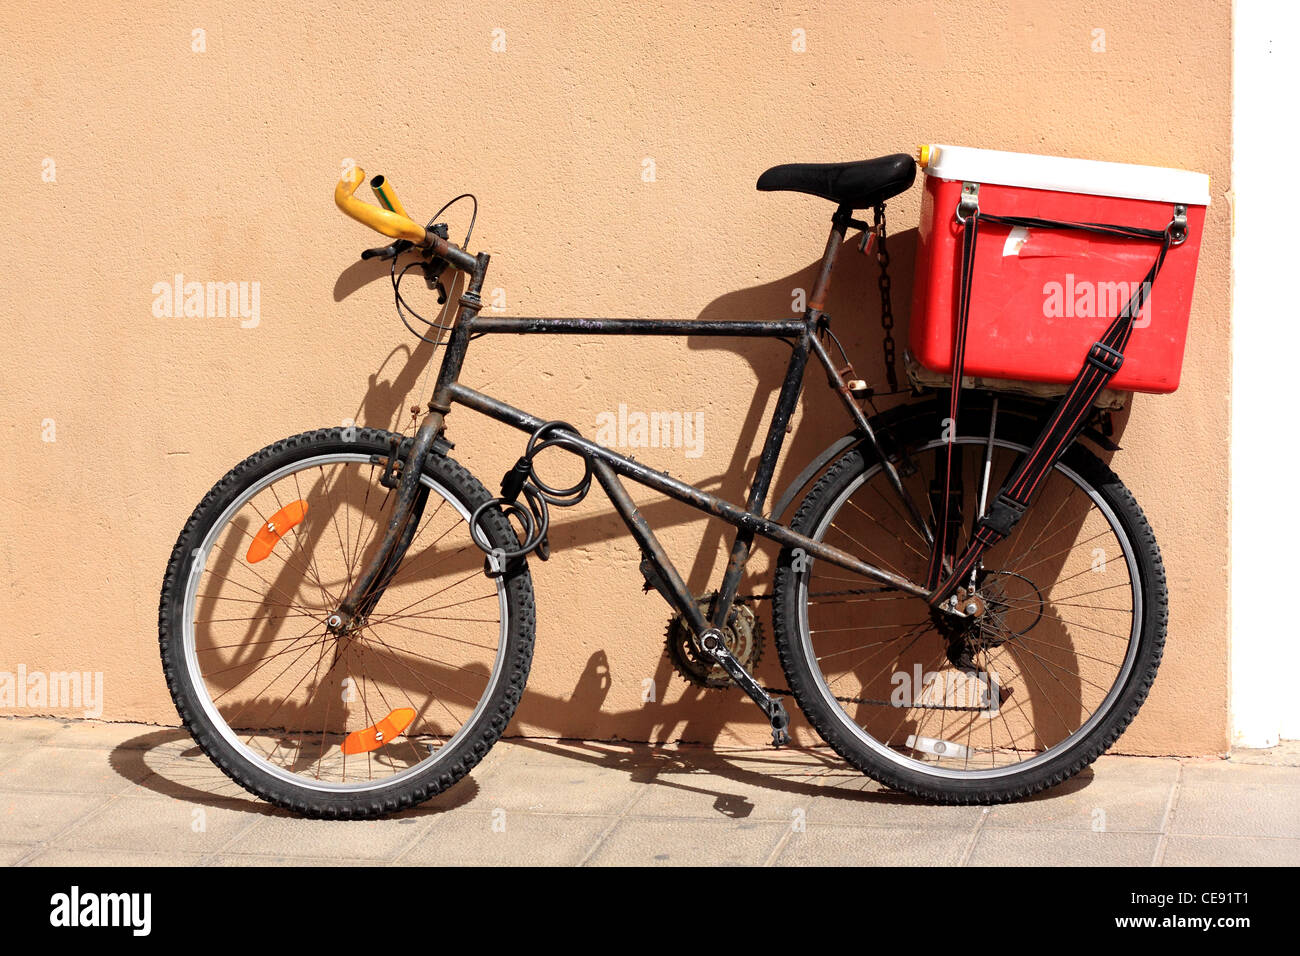 Muy usado bike apoyado contra una pared en color ocre rosa Callajero, Fuerteventura. Foto de stock